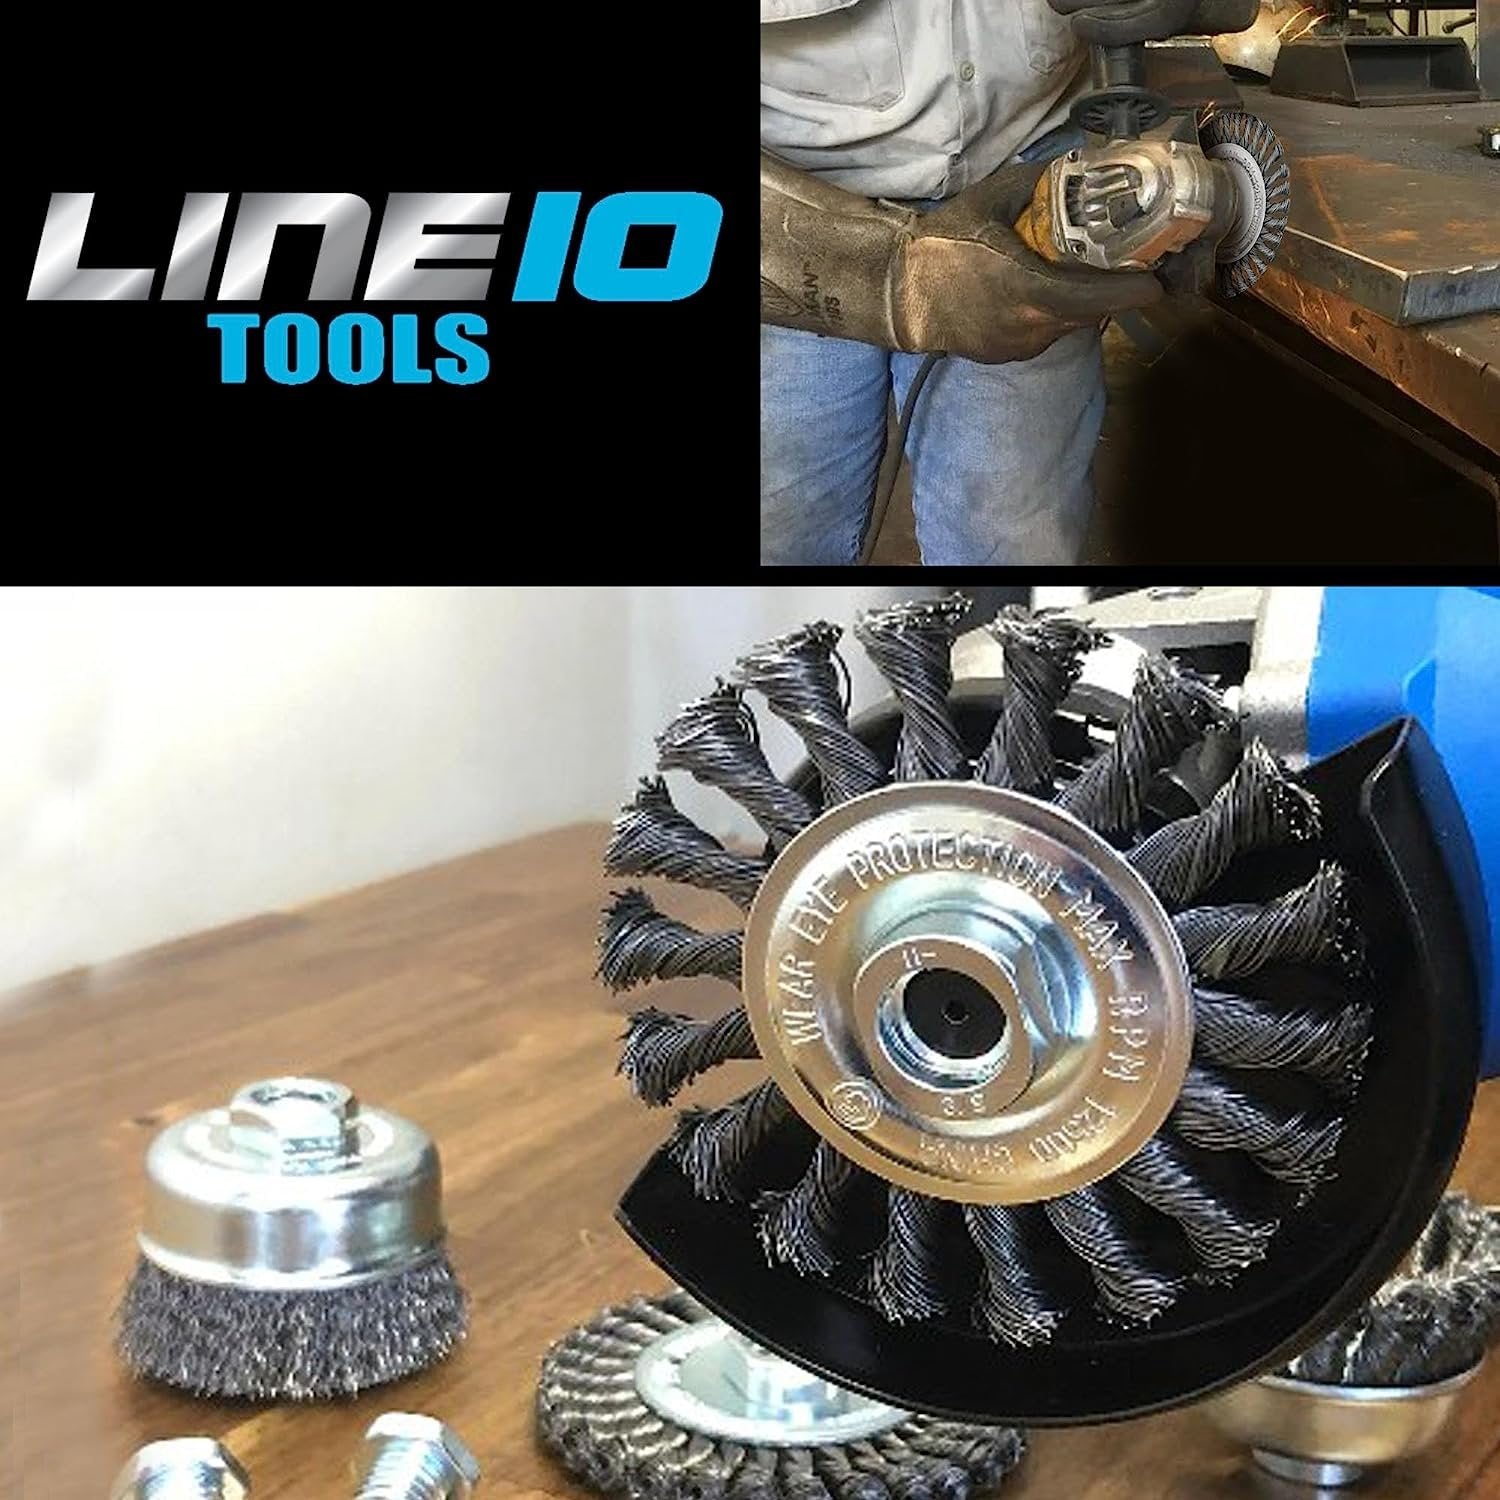 LINE10 Tools - Juego de 4 cepillos de rueda de alambre circular anudado de 4 pulgadas para amoladora angular, 1/2 pulgada de grosor, para limpieza de óxido de alta resistencia 